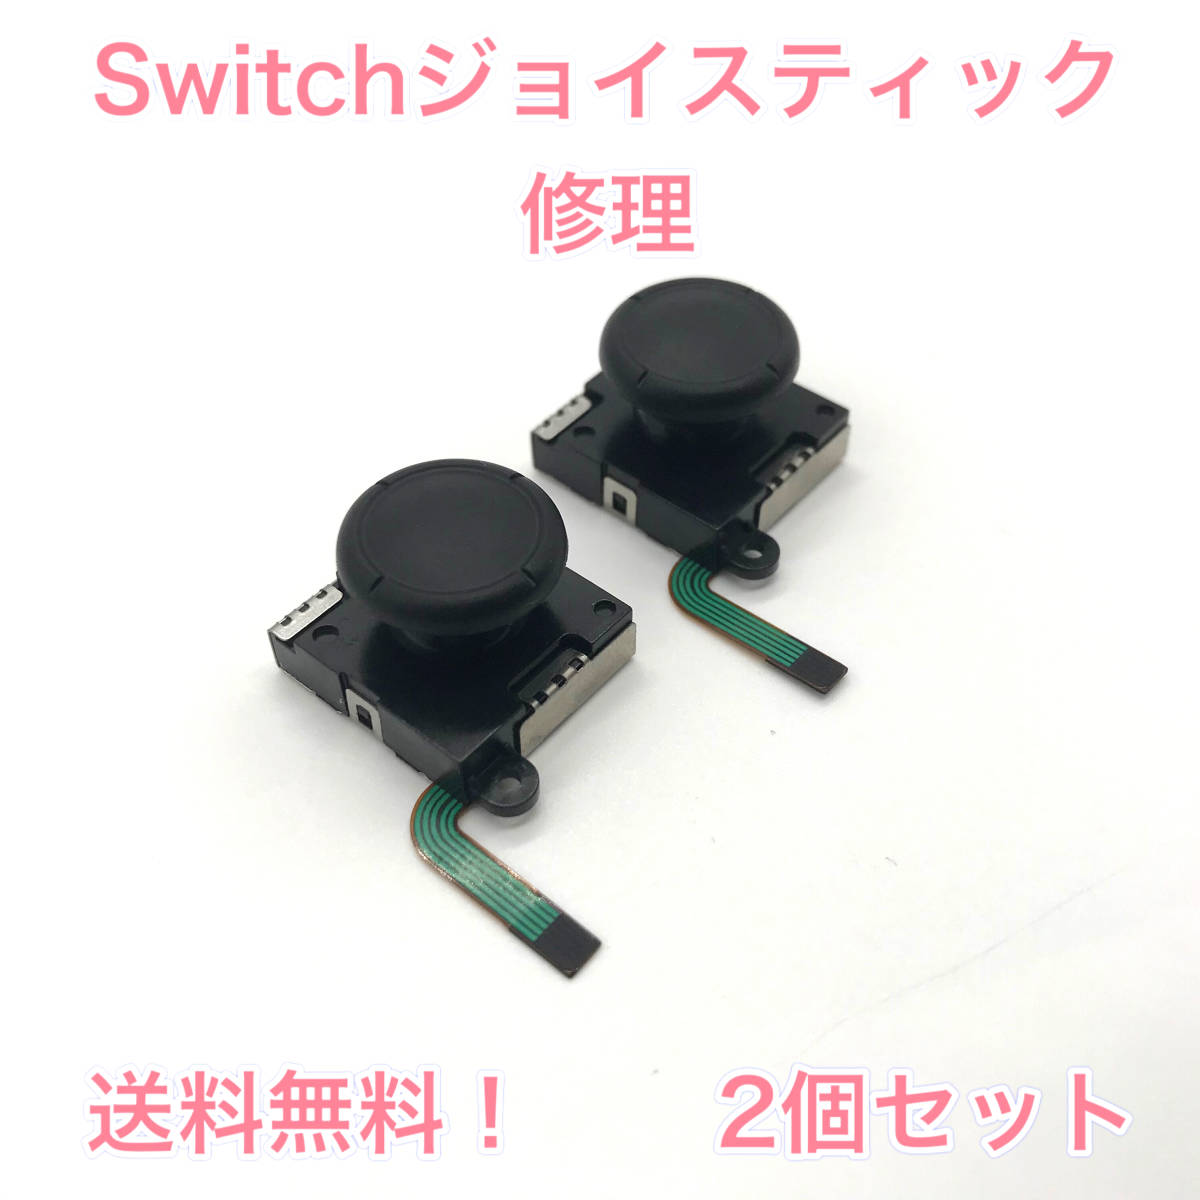 C10匿名配送・修理 緑ケーブル・2個スティック Switchジョイコンの画像1